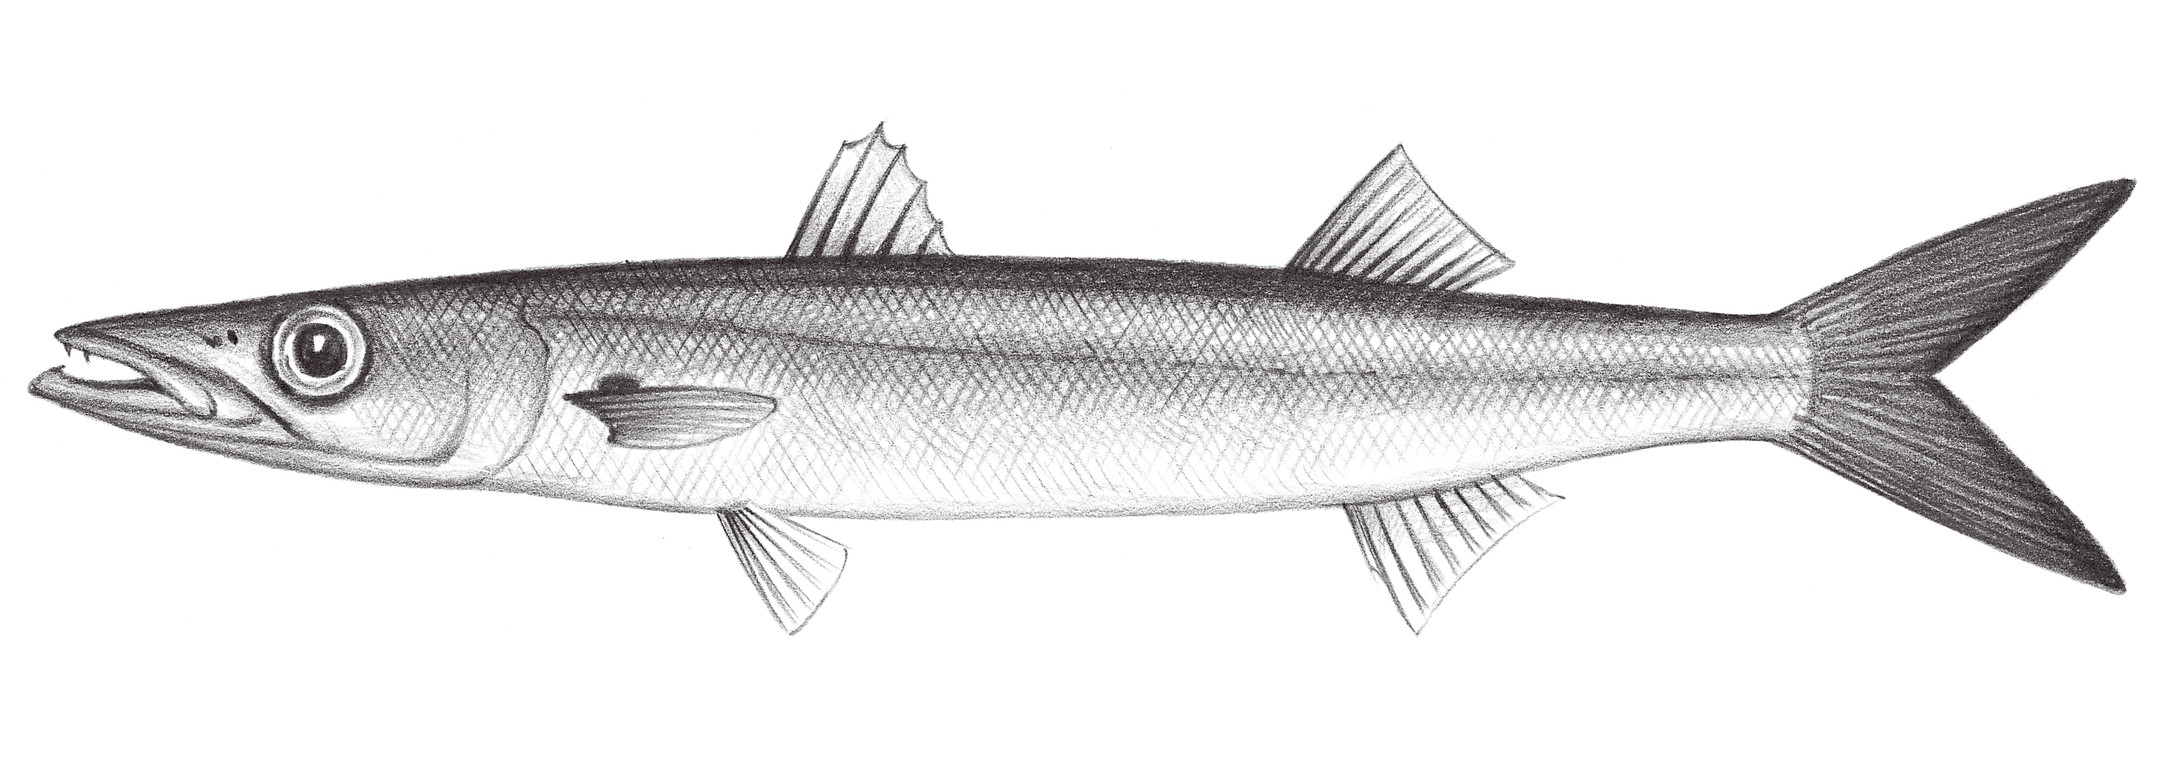 2323.	大眼金梭魚 Sphyraena forsteri Cuvier, 1829